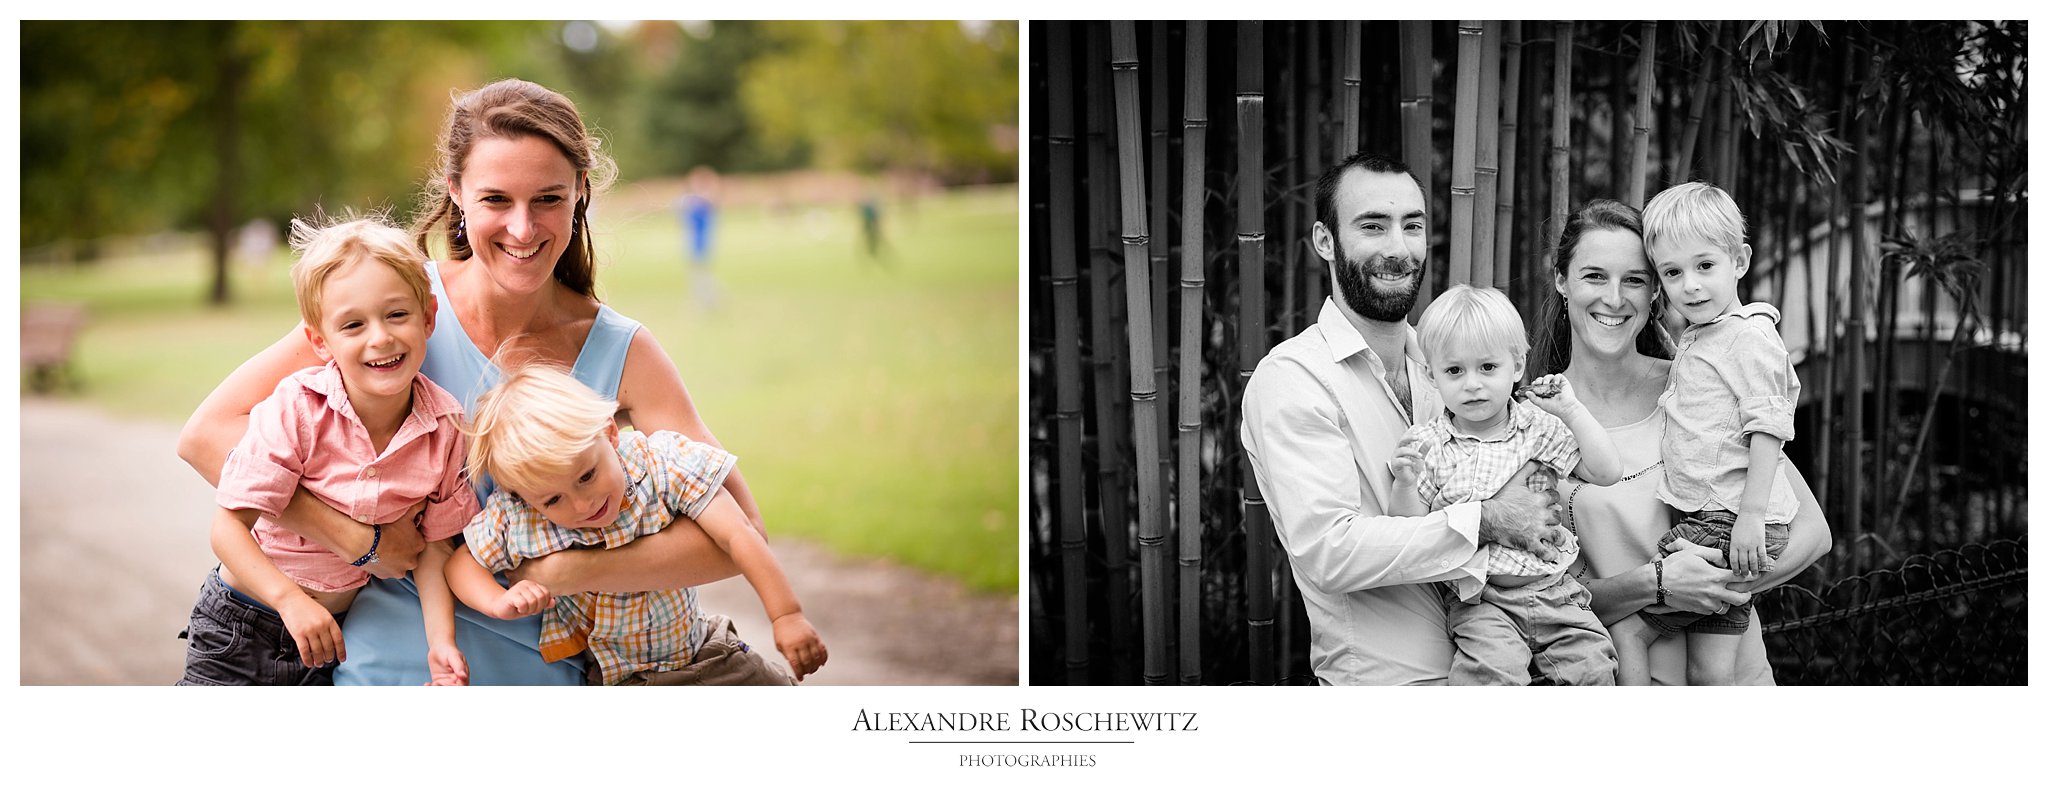 La séance engagement et famille de Nathalie et Nicolas au Parc Bordelais. Alexandre Roschewitz Photographies.